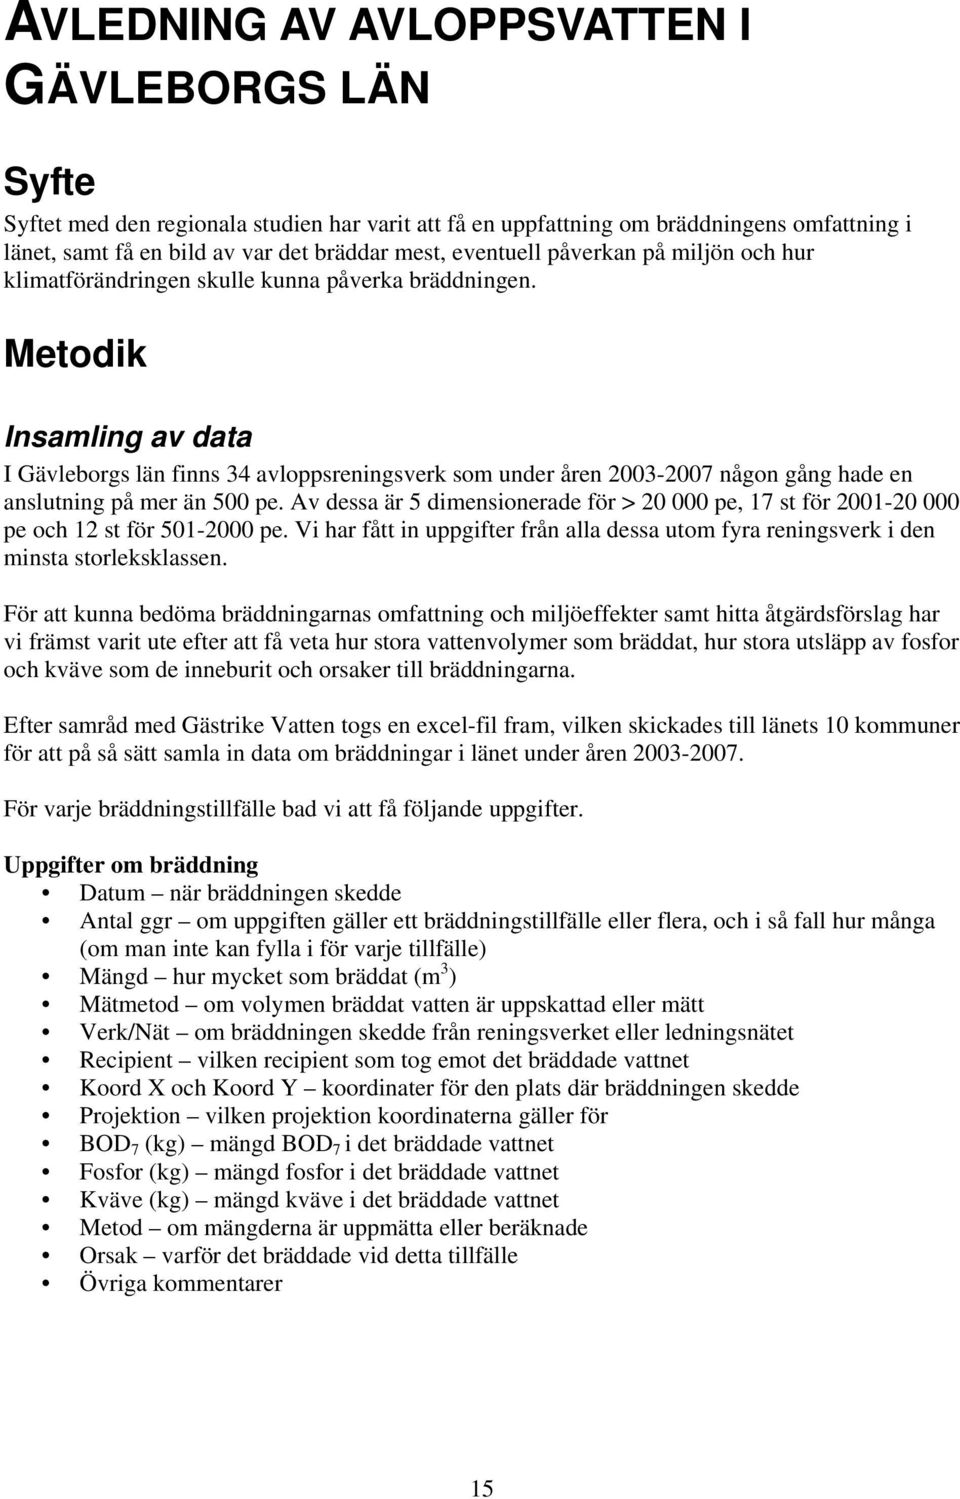 Metodik Insamling av data I Gävleborgs län finns 34 avloppsreningsverk som under åren 2003-2007 någon gång hade en anslutning på mer än 500 pe.